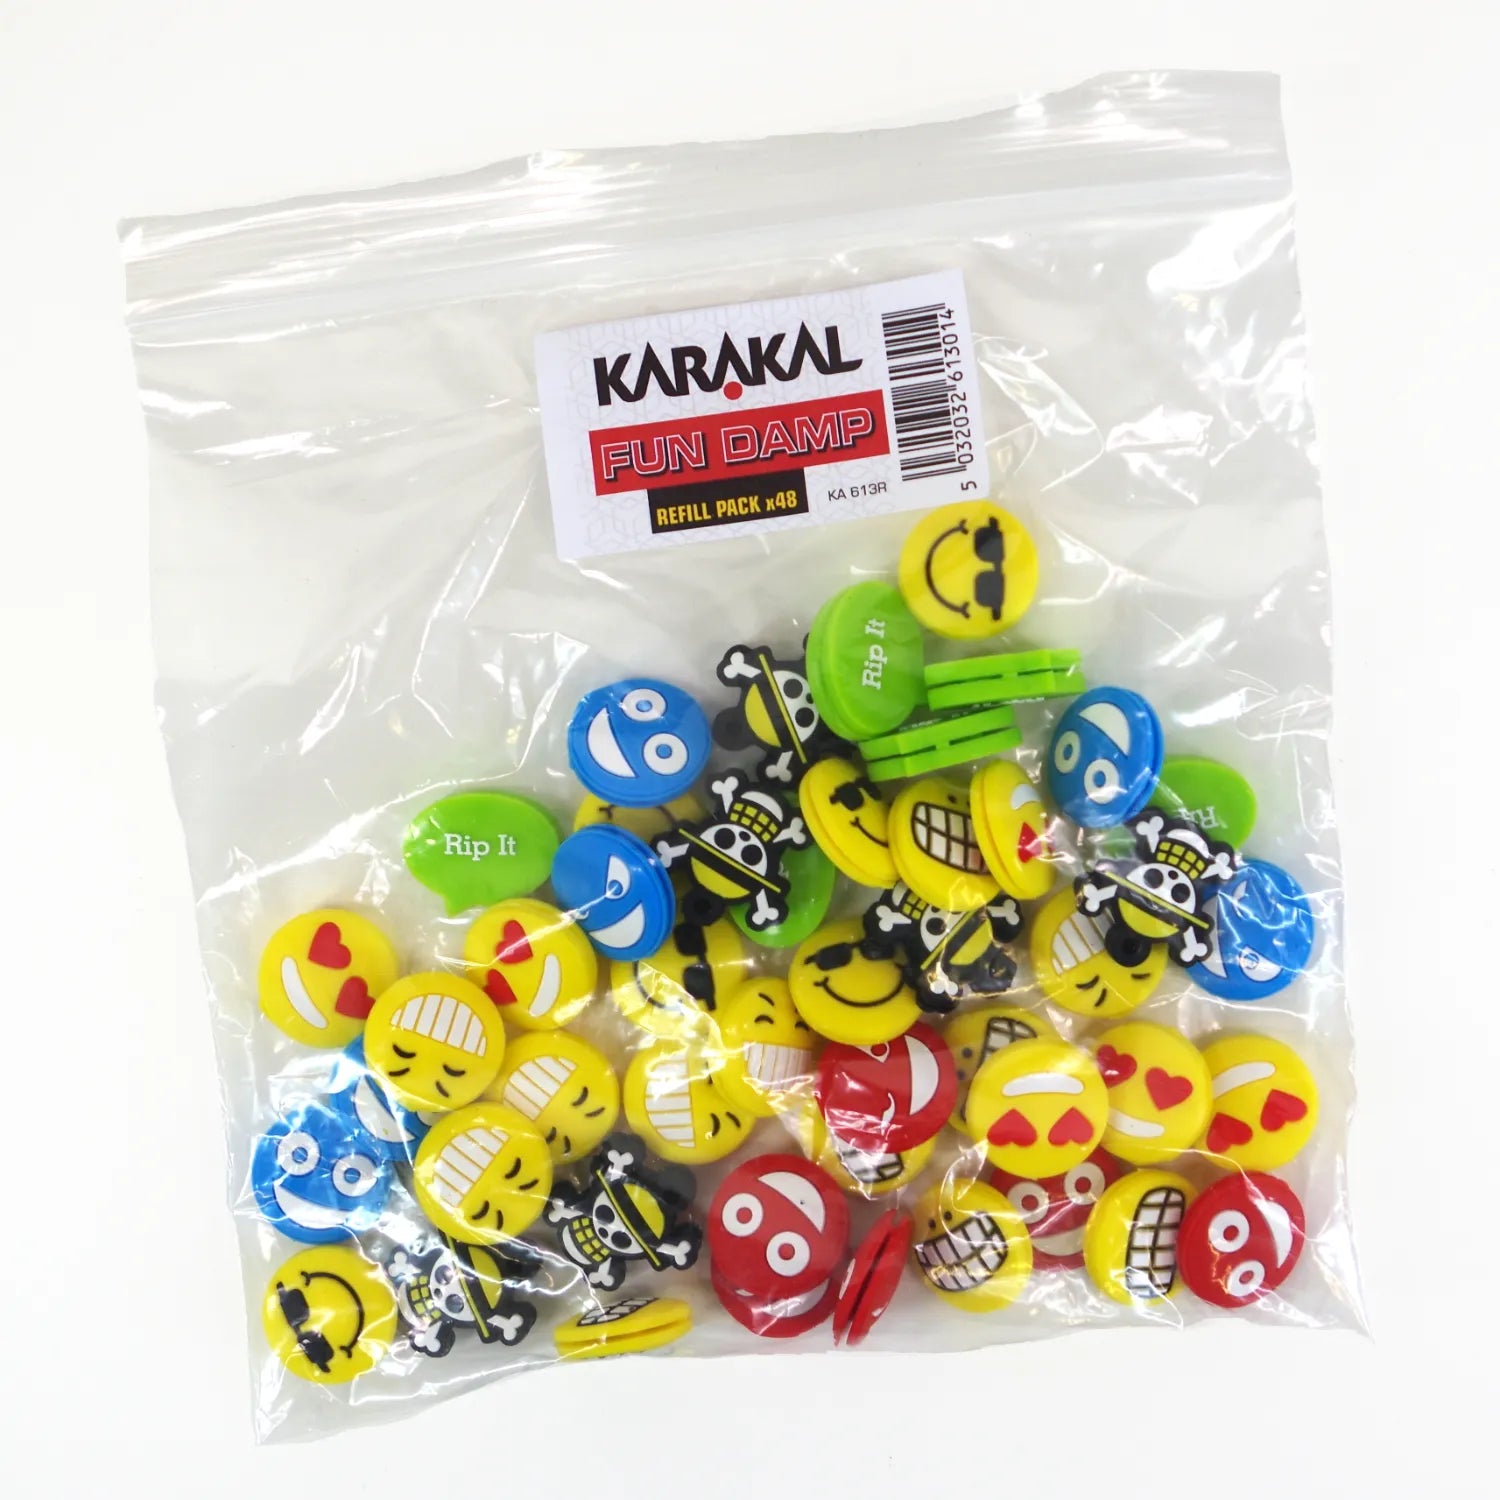 Karakal Fun Damp Refill Pack